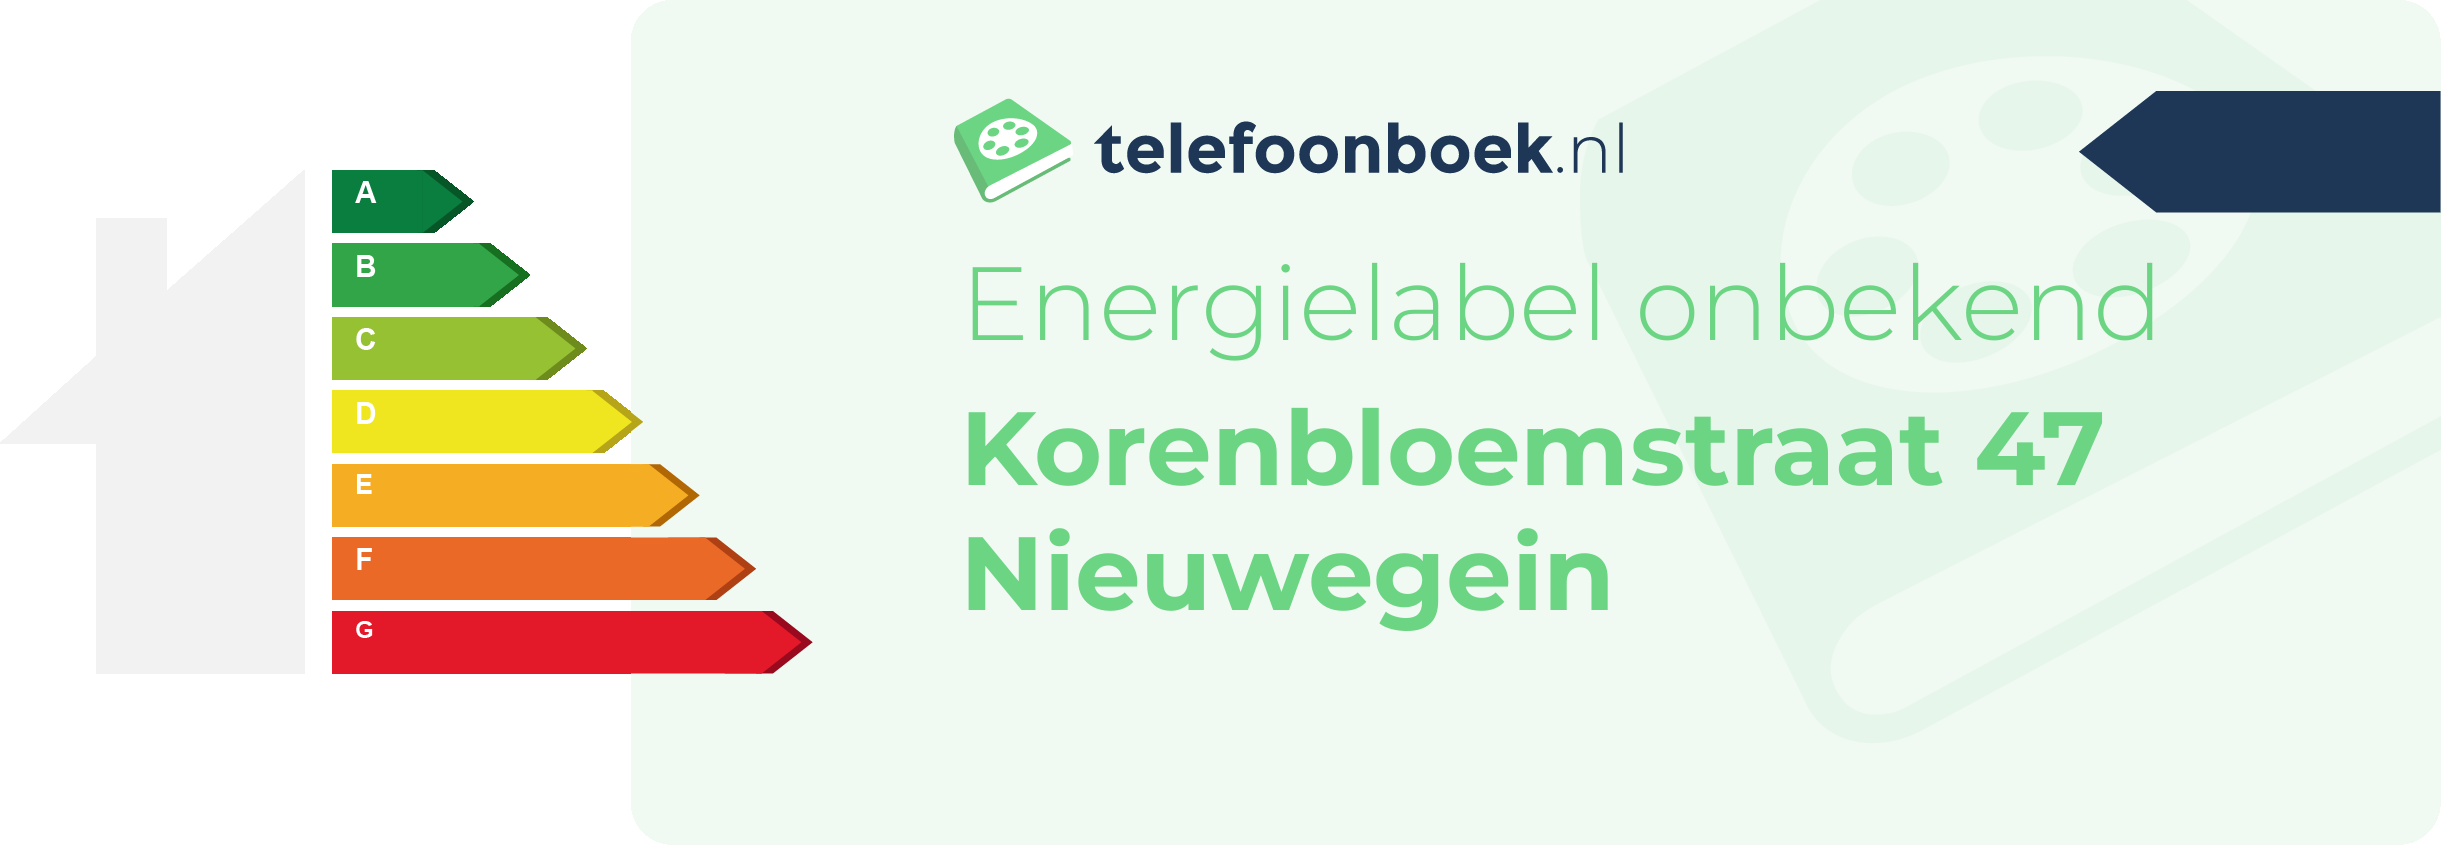 Energielabel Korenbloemstraat 47 Nieuwegein